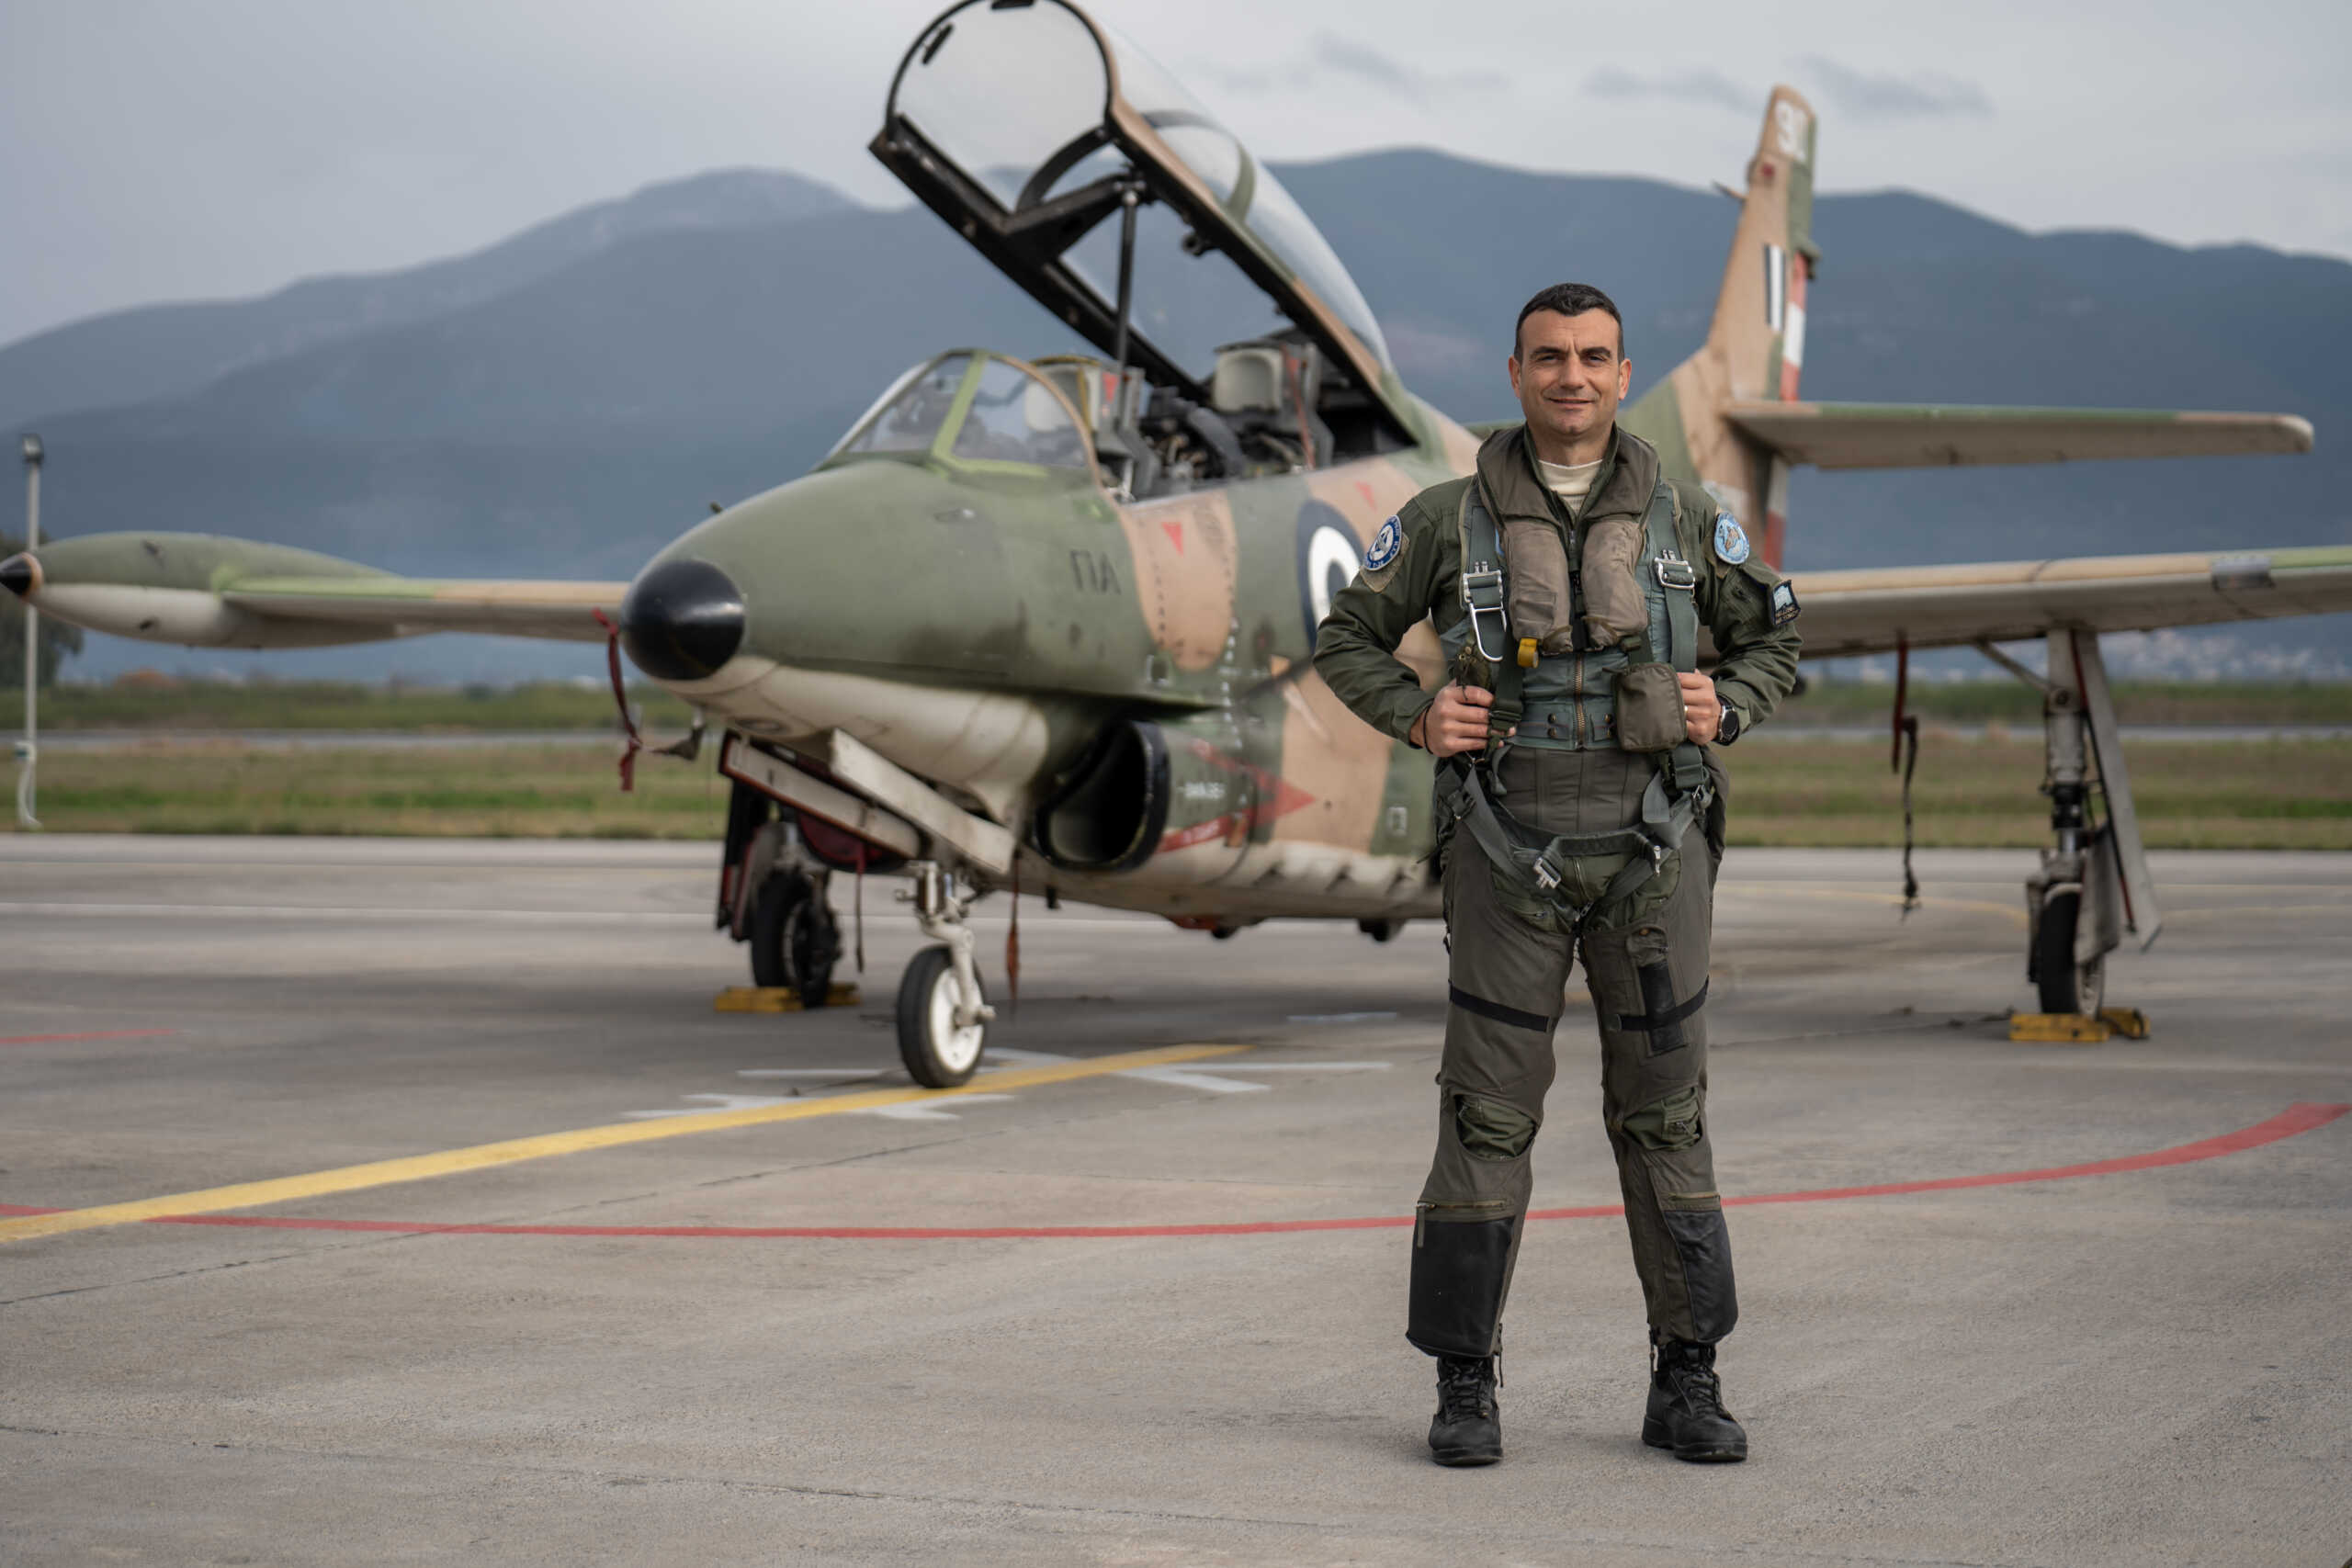 Θρήνος για τον επισμηναγό Επαμεινώνδα Κωστέα που σκοτώθηκε με το εκπαιδευτικό αεροπλάνο στην Καλαμάτα – Ήταν η τελευταία πτήση του με τα T-2